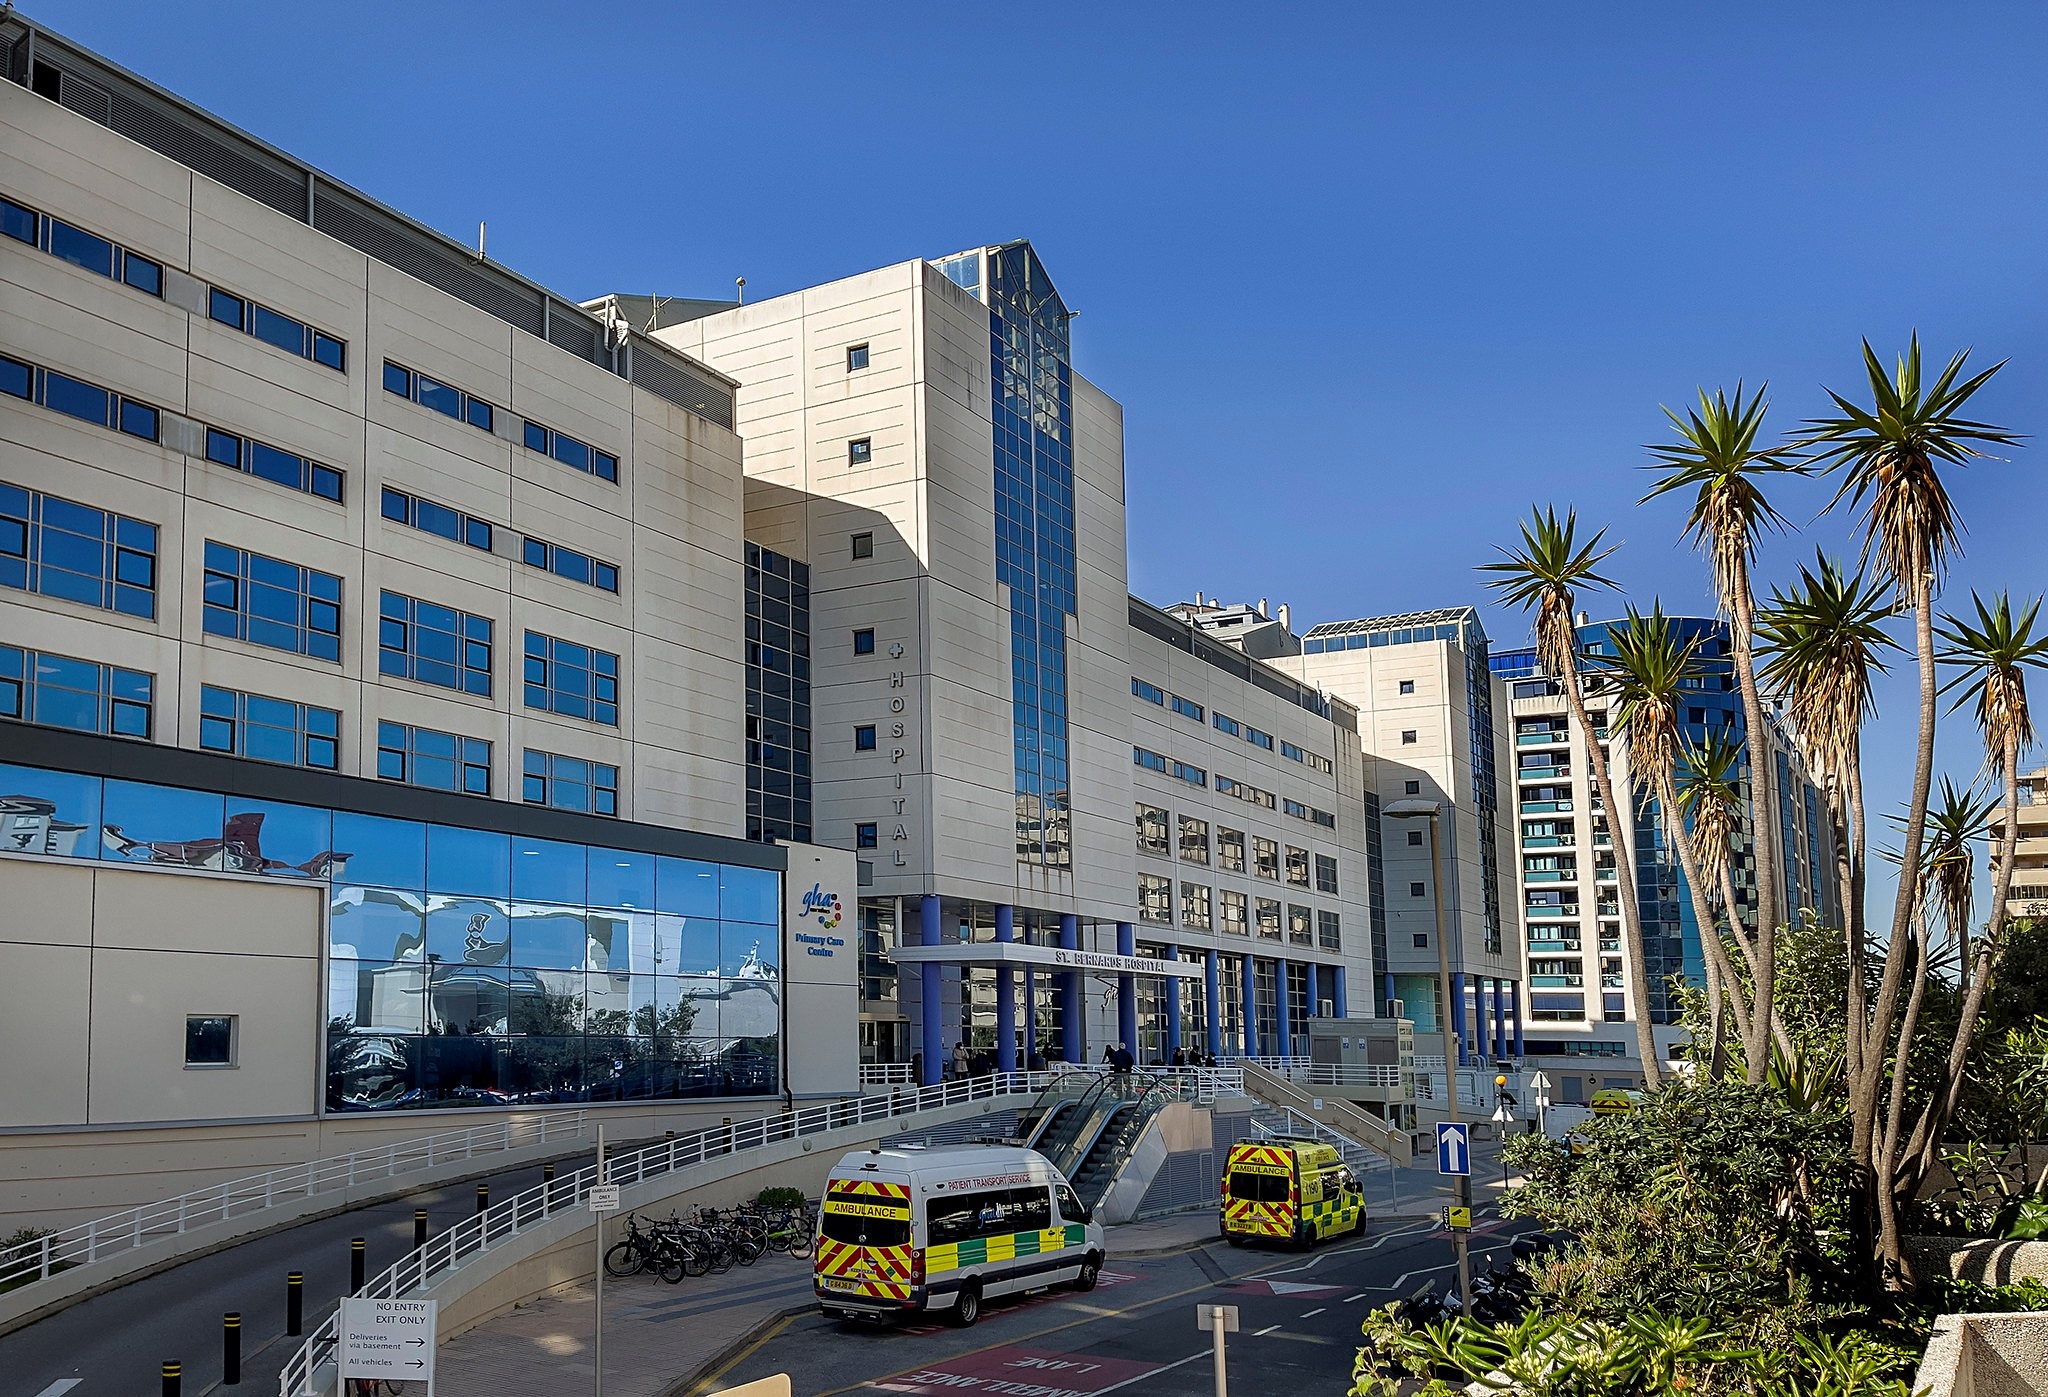 Gibraltar Health Authority’s St Bernard’s Hospital